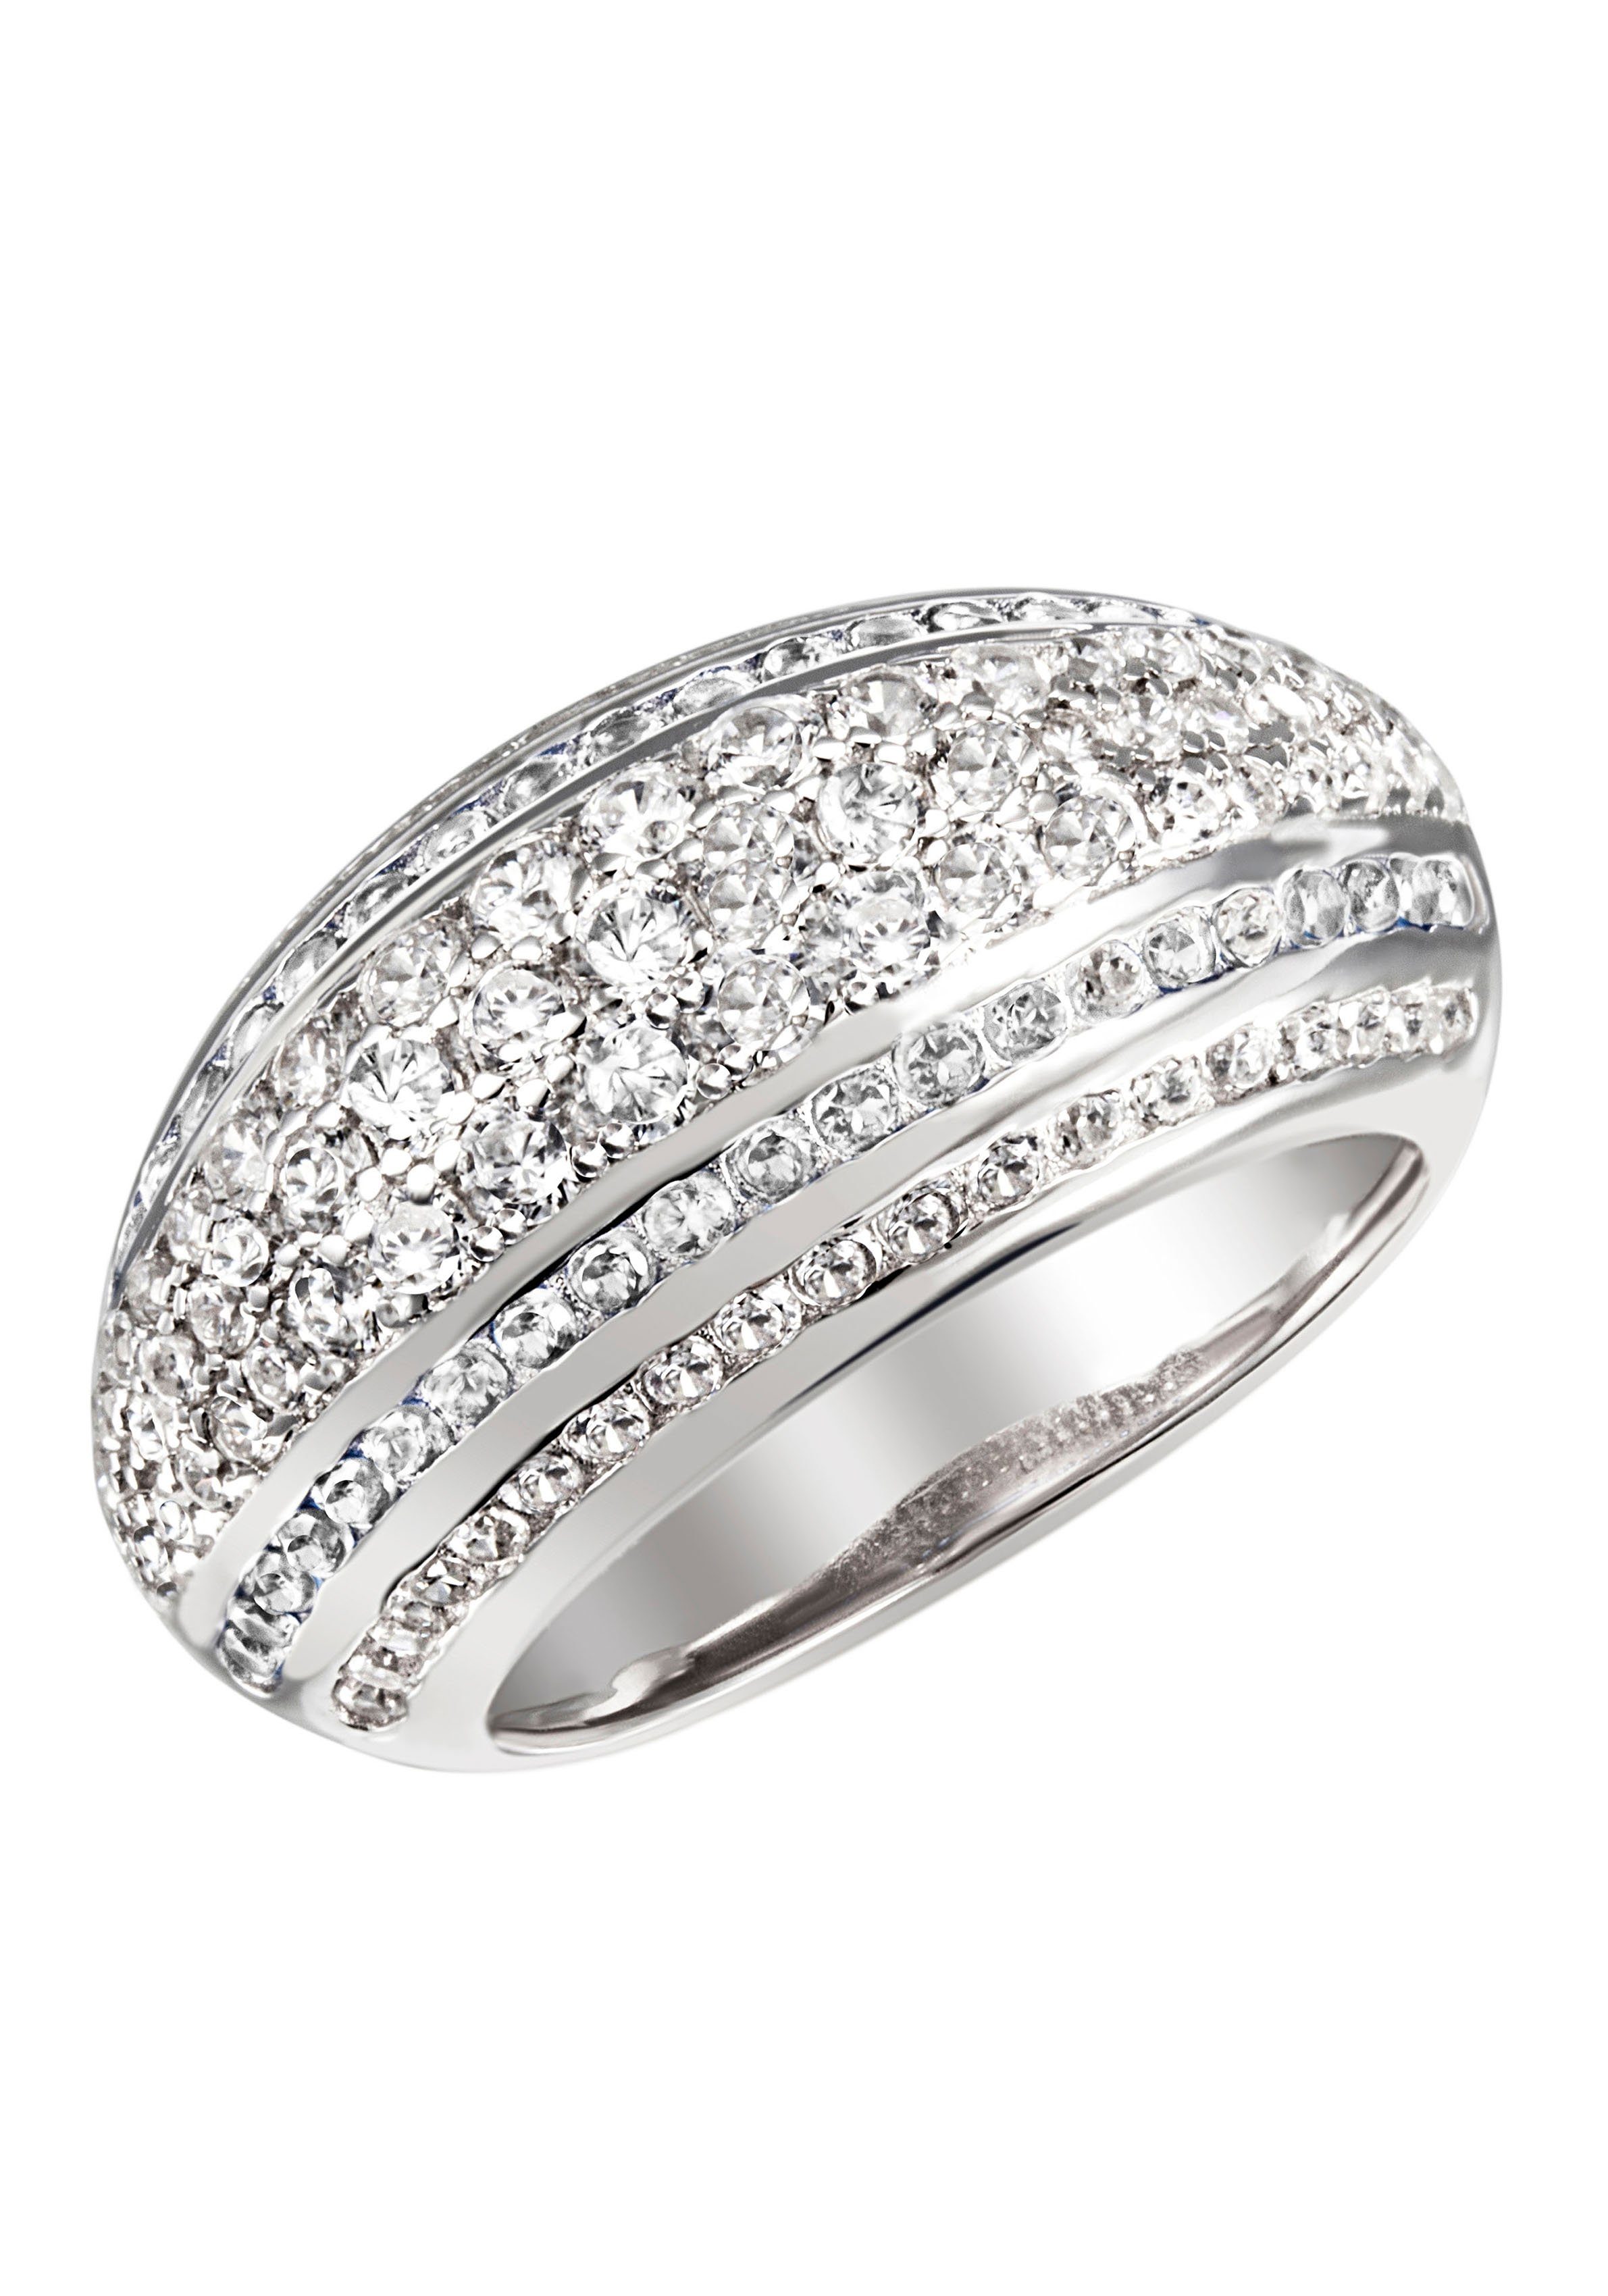 Firetti Fingerring Schmuck Geschenk Silber 925 Silberring Ring Pavé-Optik glitzernd, zu Kleid, Shirt, Jeans, Sneaker! Anlass Geburtstag Weihnachten